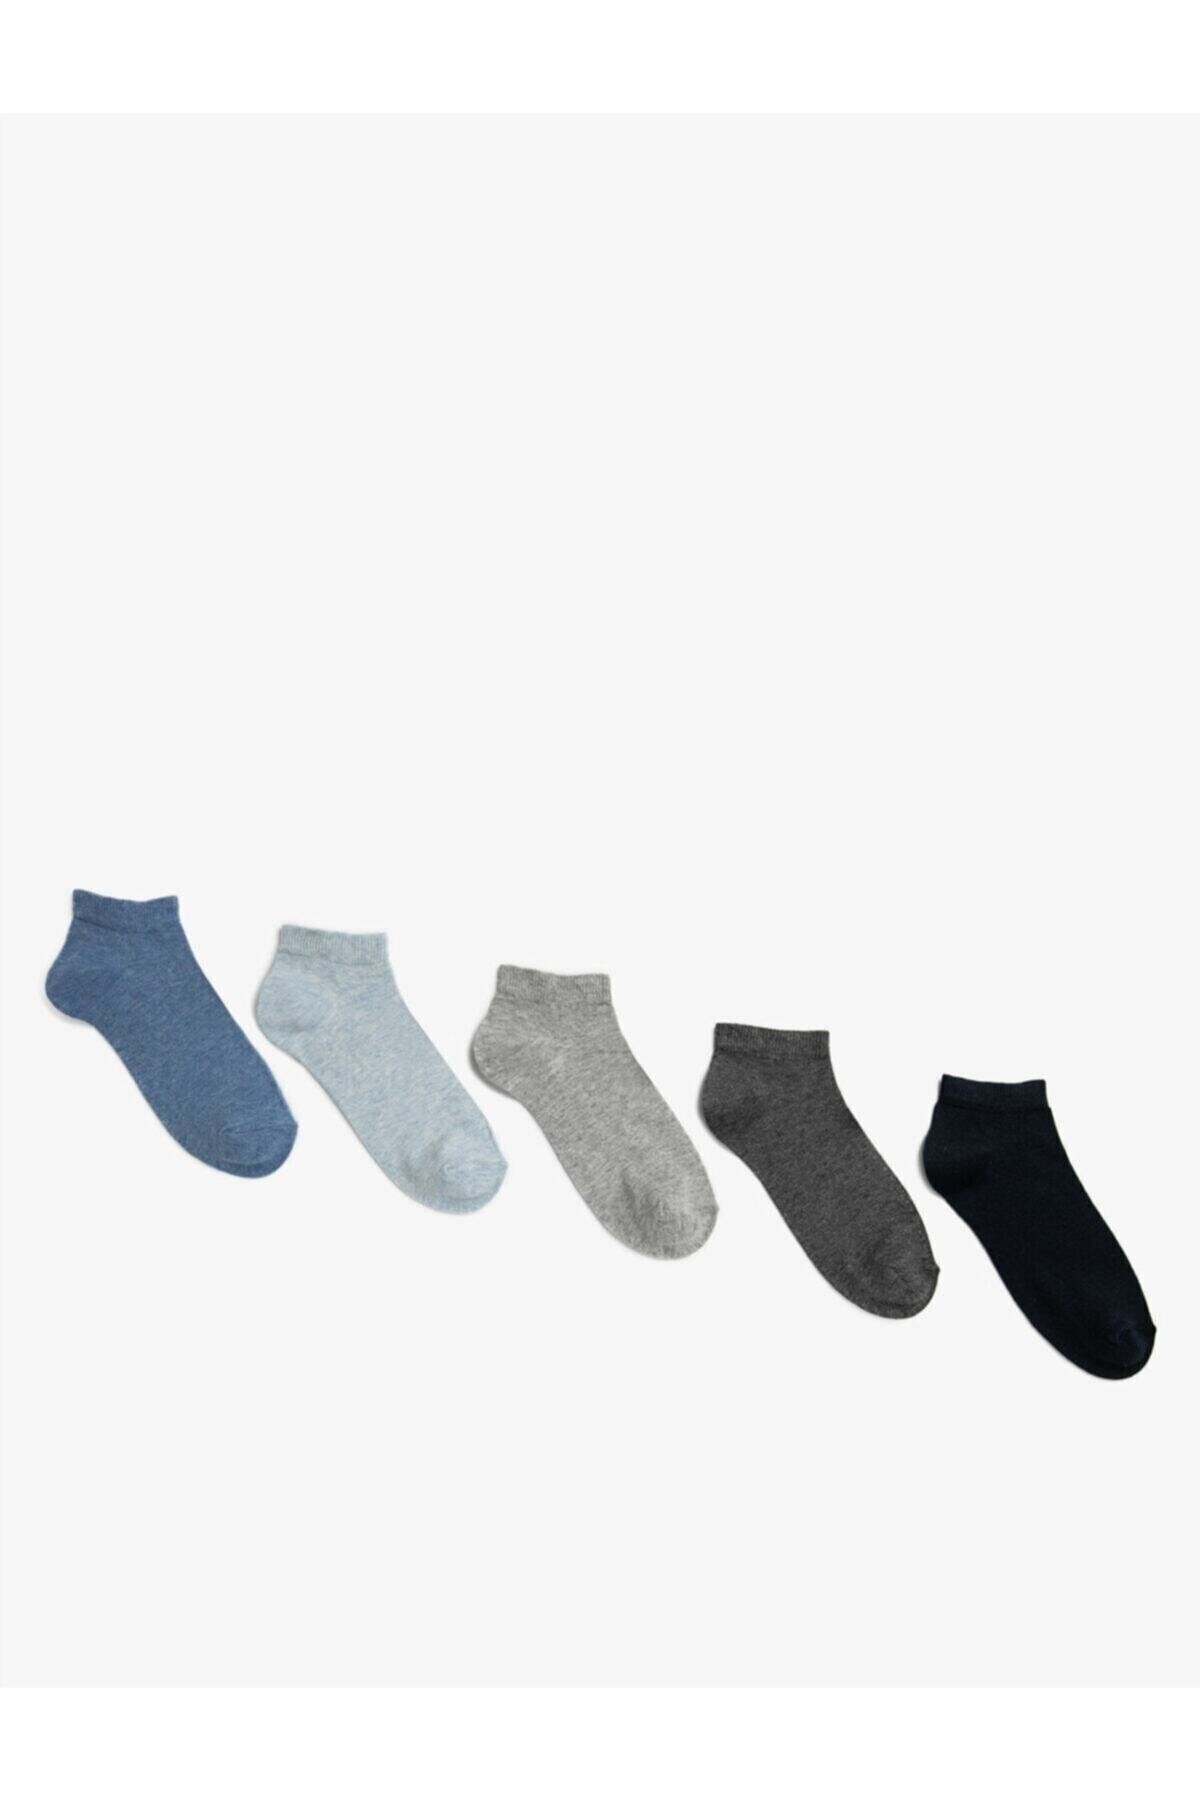 Koton Kadin 5'li Pamuklu Basic Çorap Seti